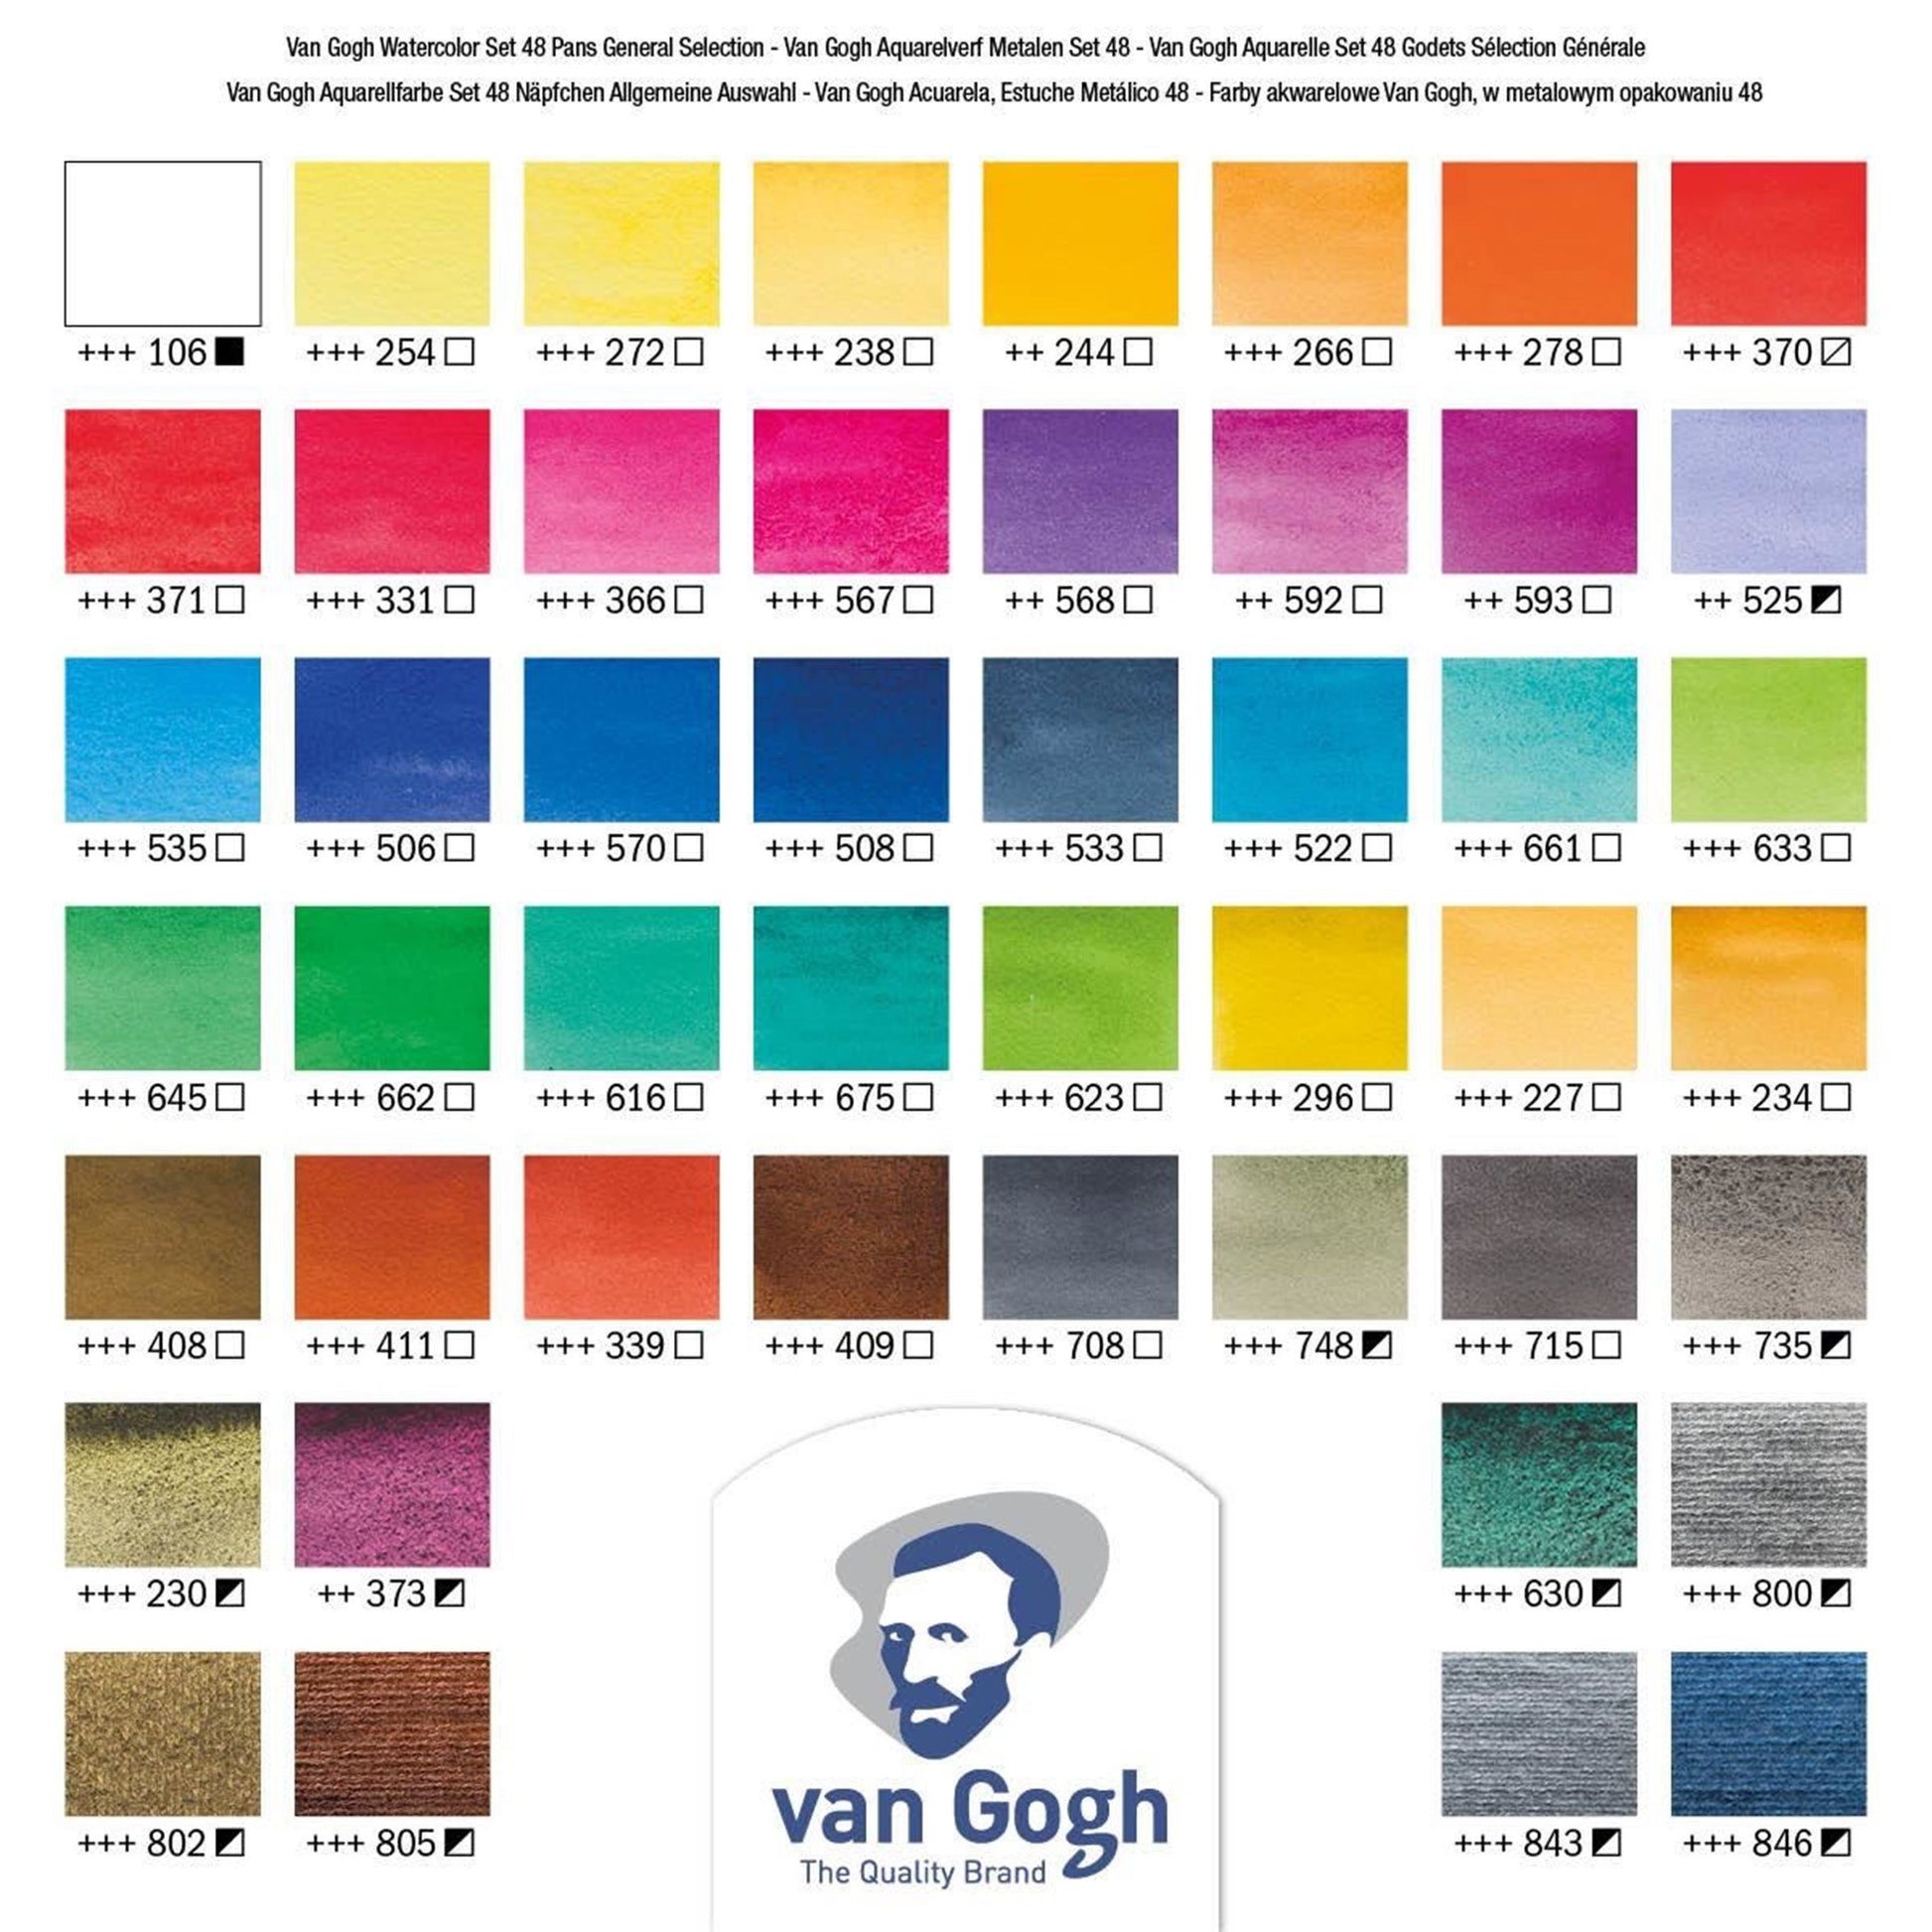 Van Gogh Watercolor: 36 pan Metal Box